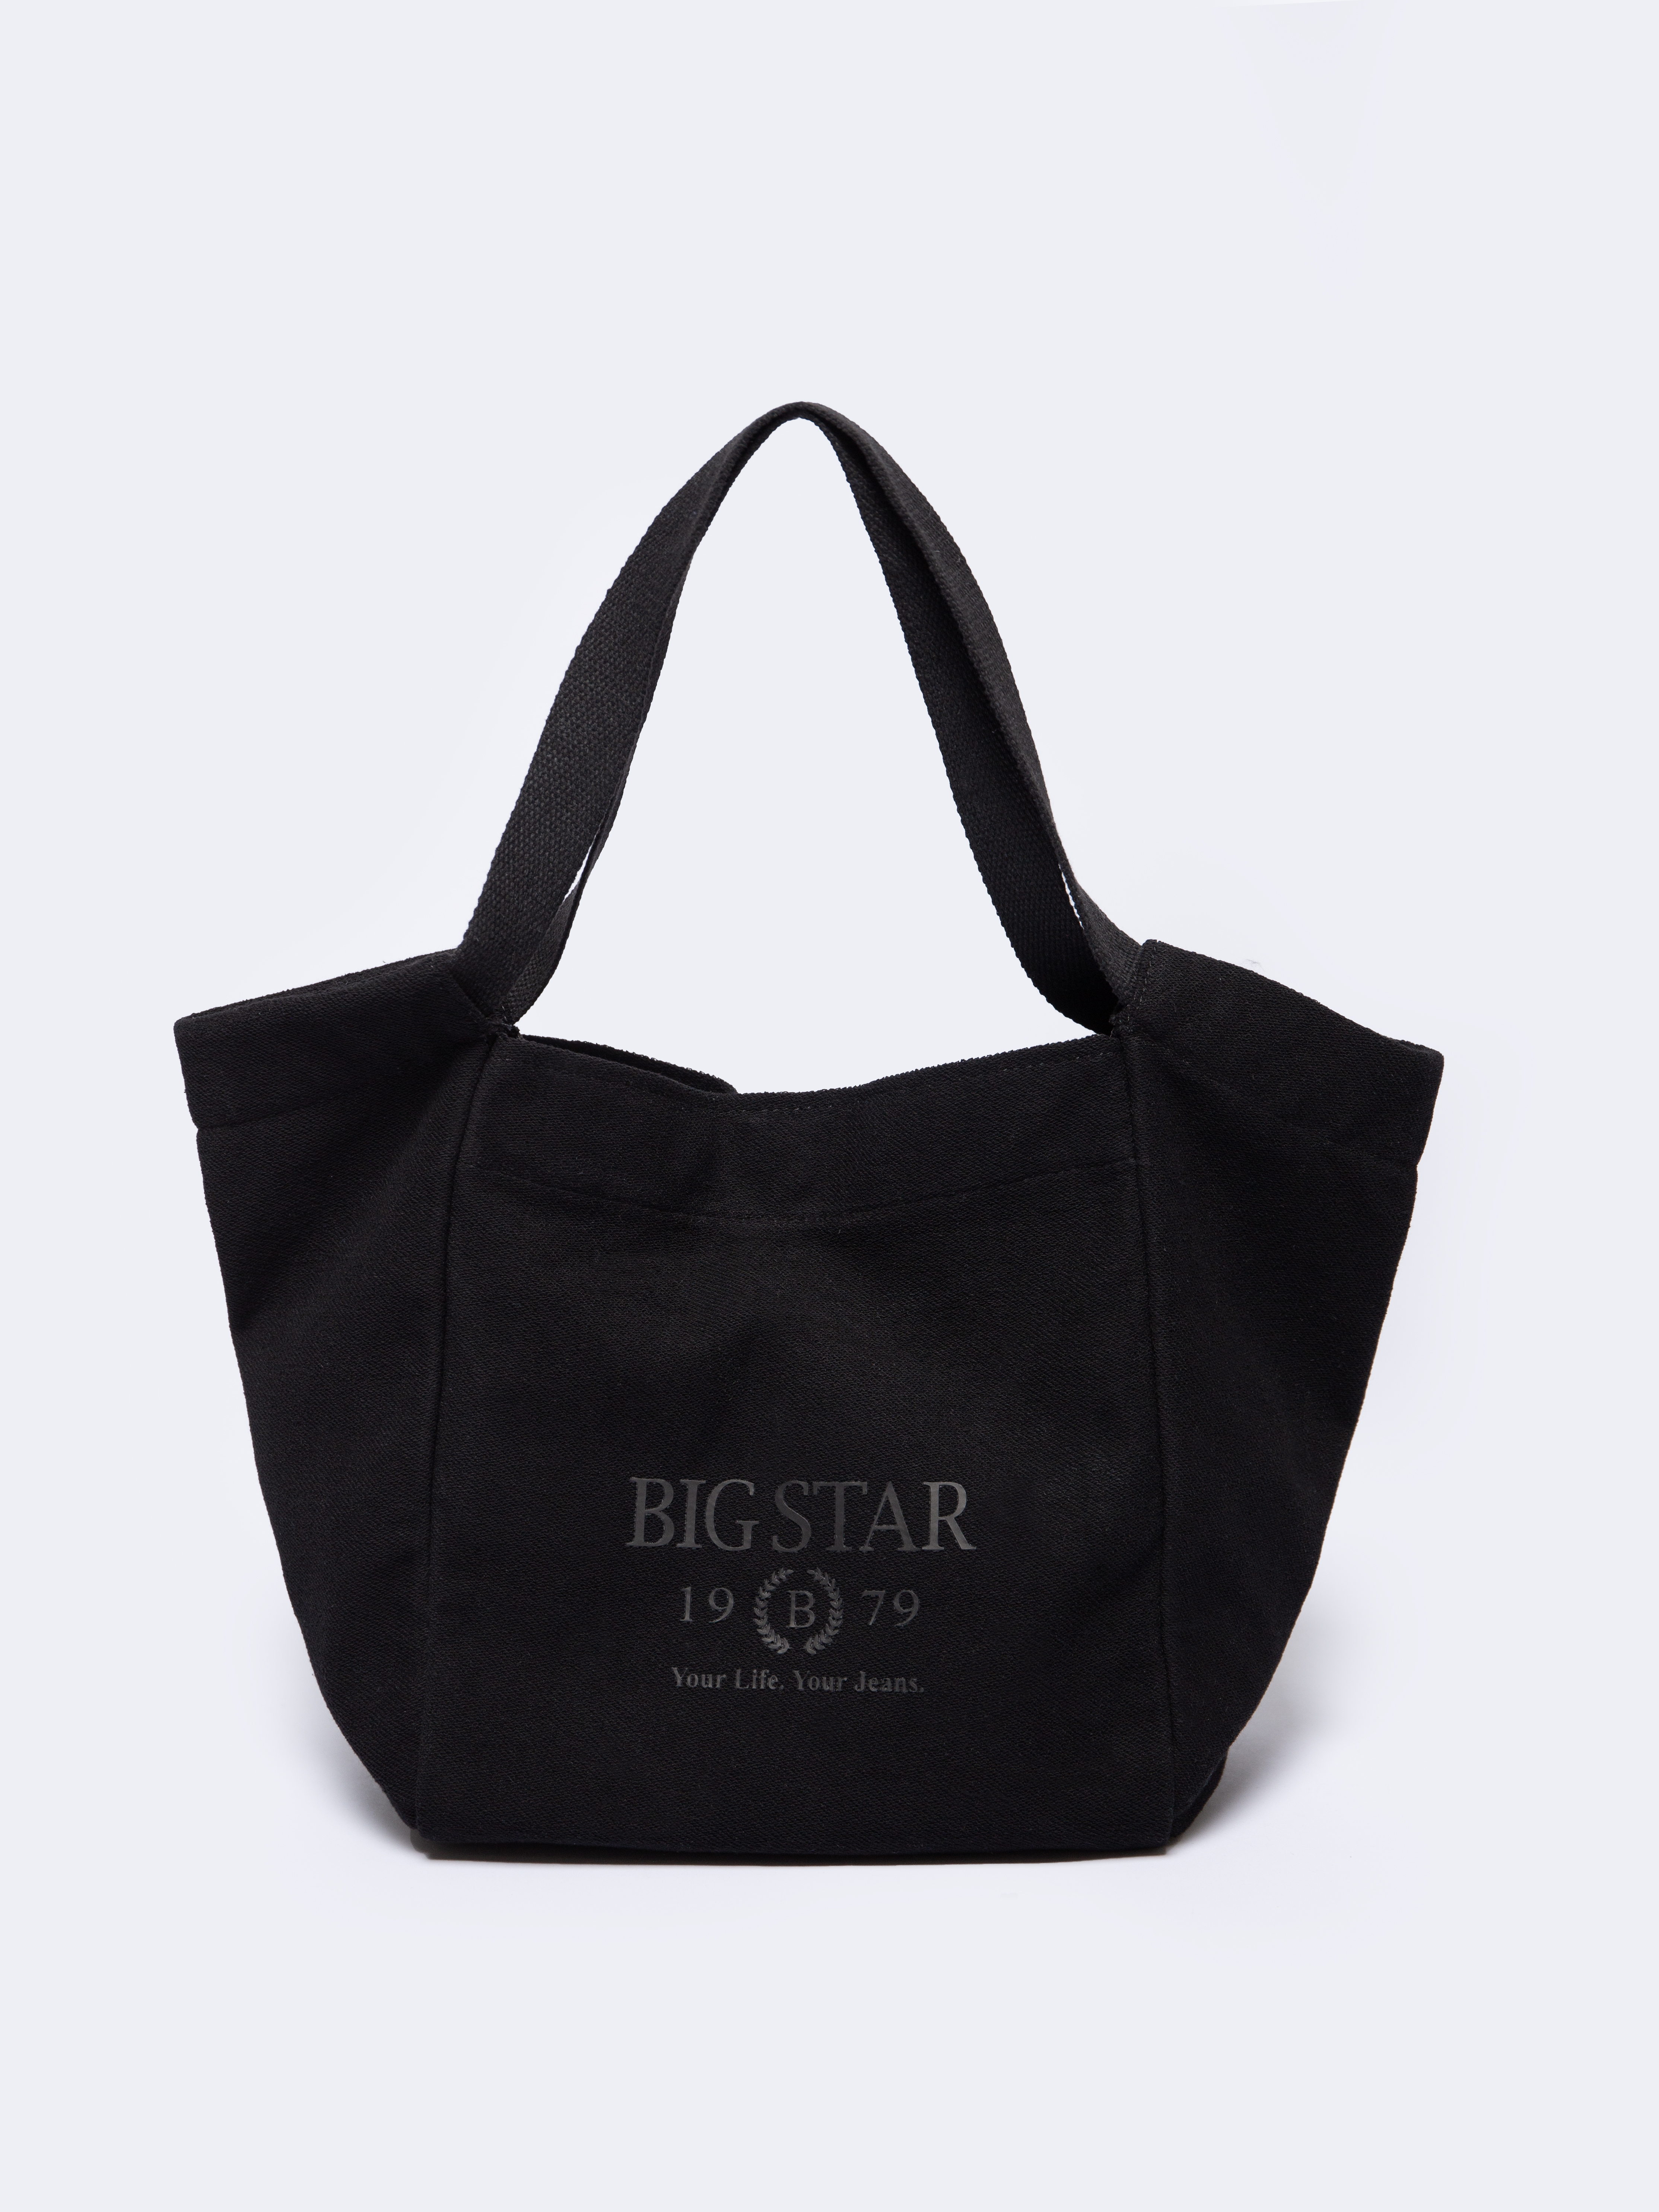 Big Star Woman's Bag 260139 -906